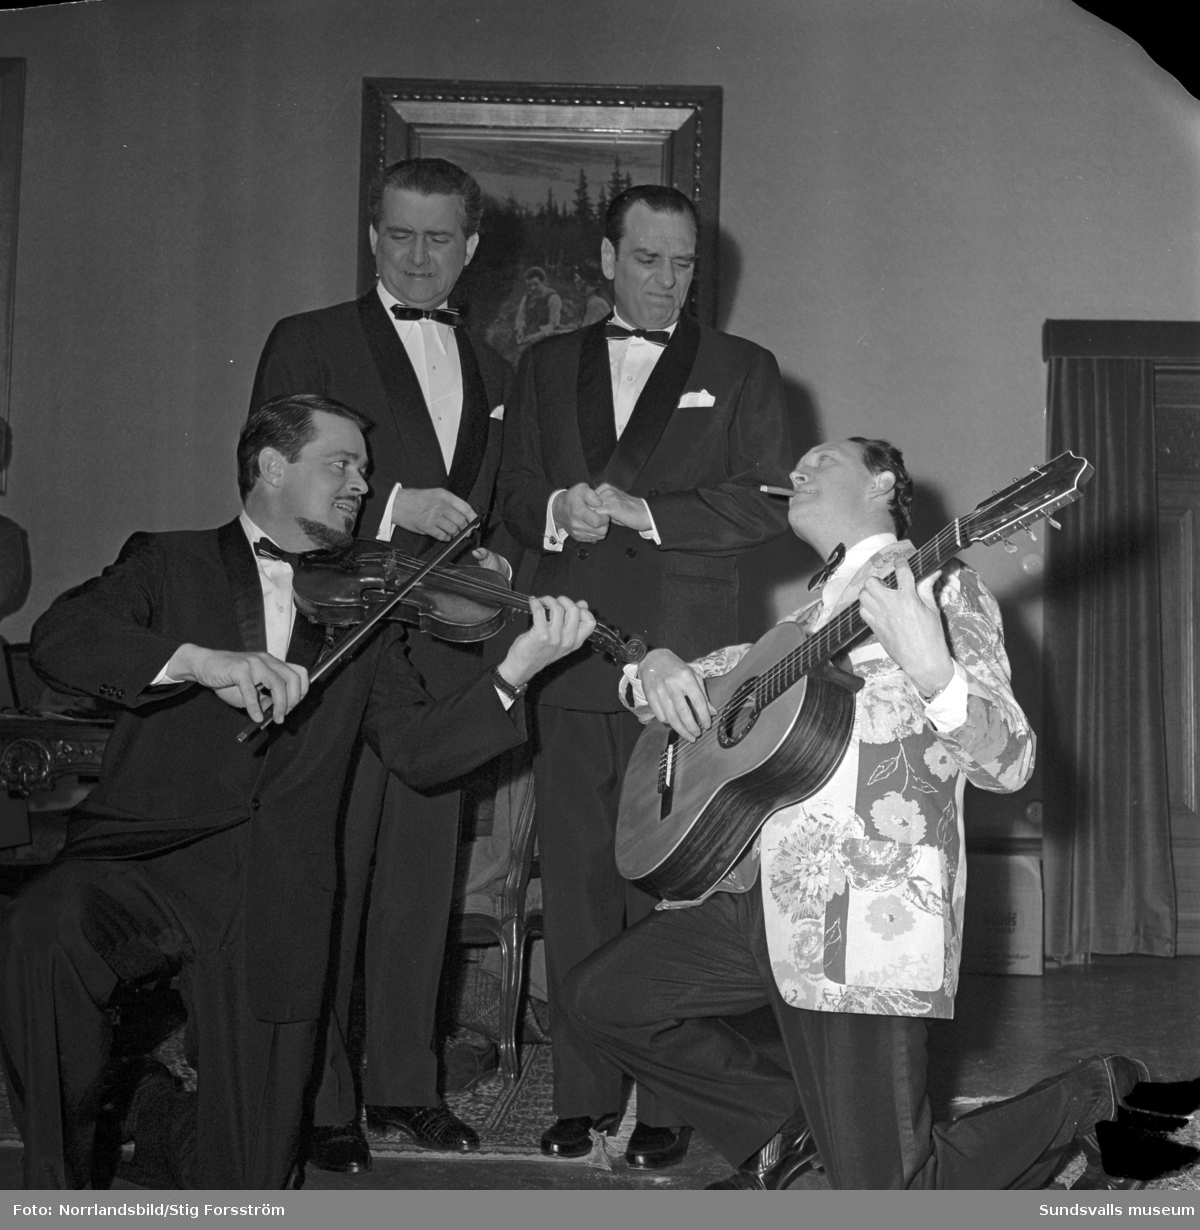 Celebra artister i Stadshussalongen 1960. Trion Swe-Danes med Alice Babs, Svend Asmussen och Ulric Neumann, vid det här tillfället utökad med Stig Järrel och Gösta Bernhard till "Vi 5".